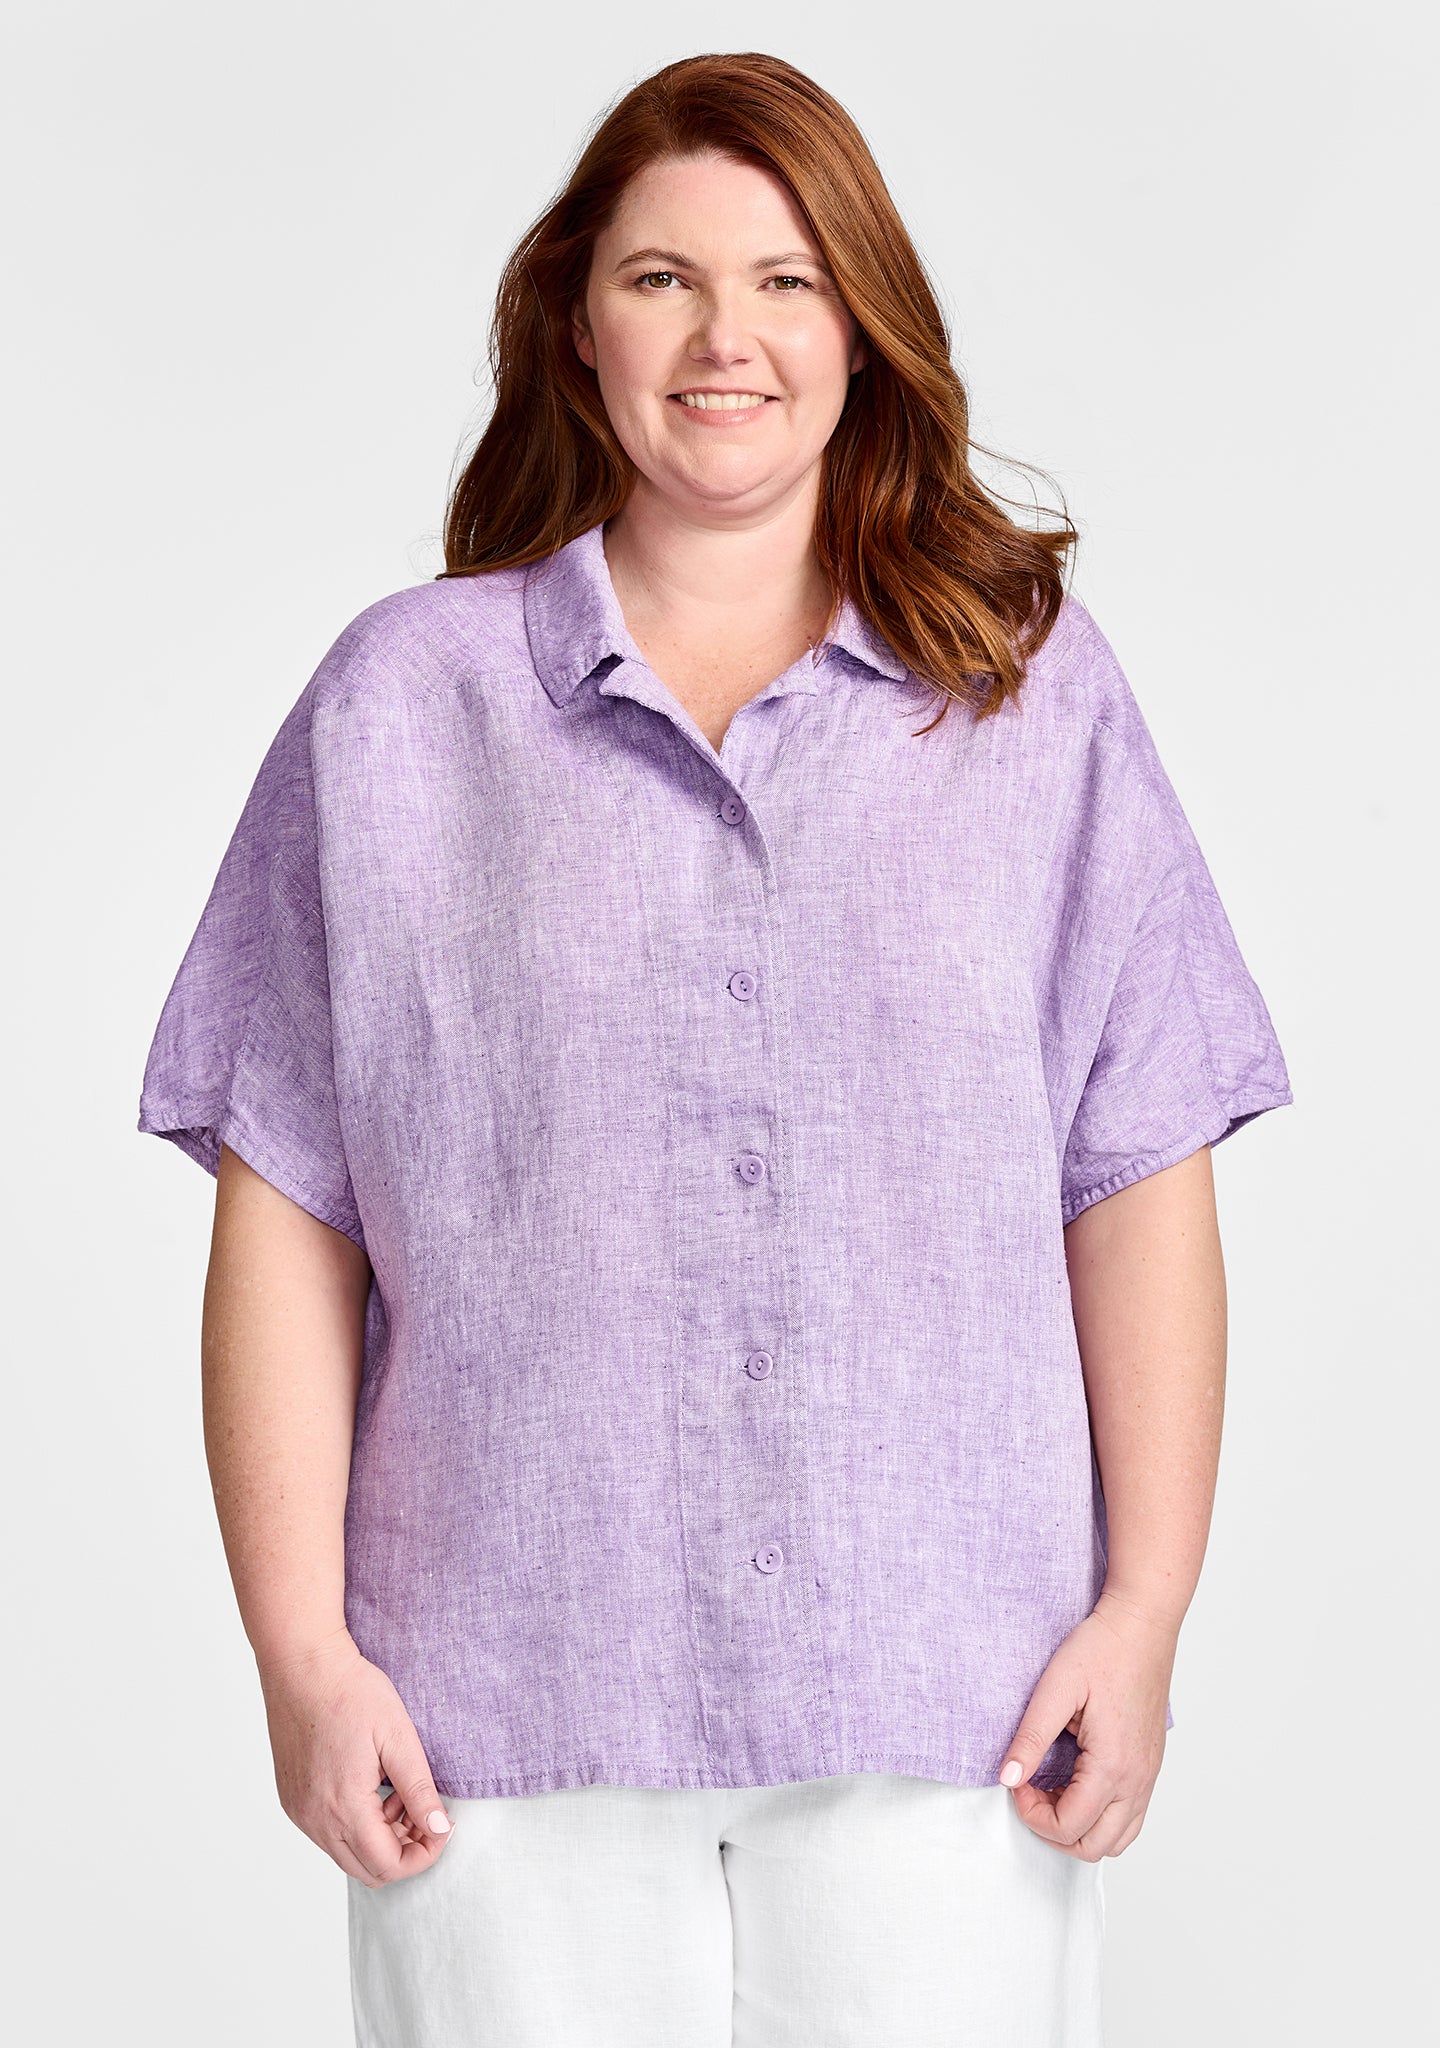 lauren shirt linen button down shirt purple